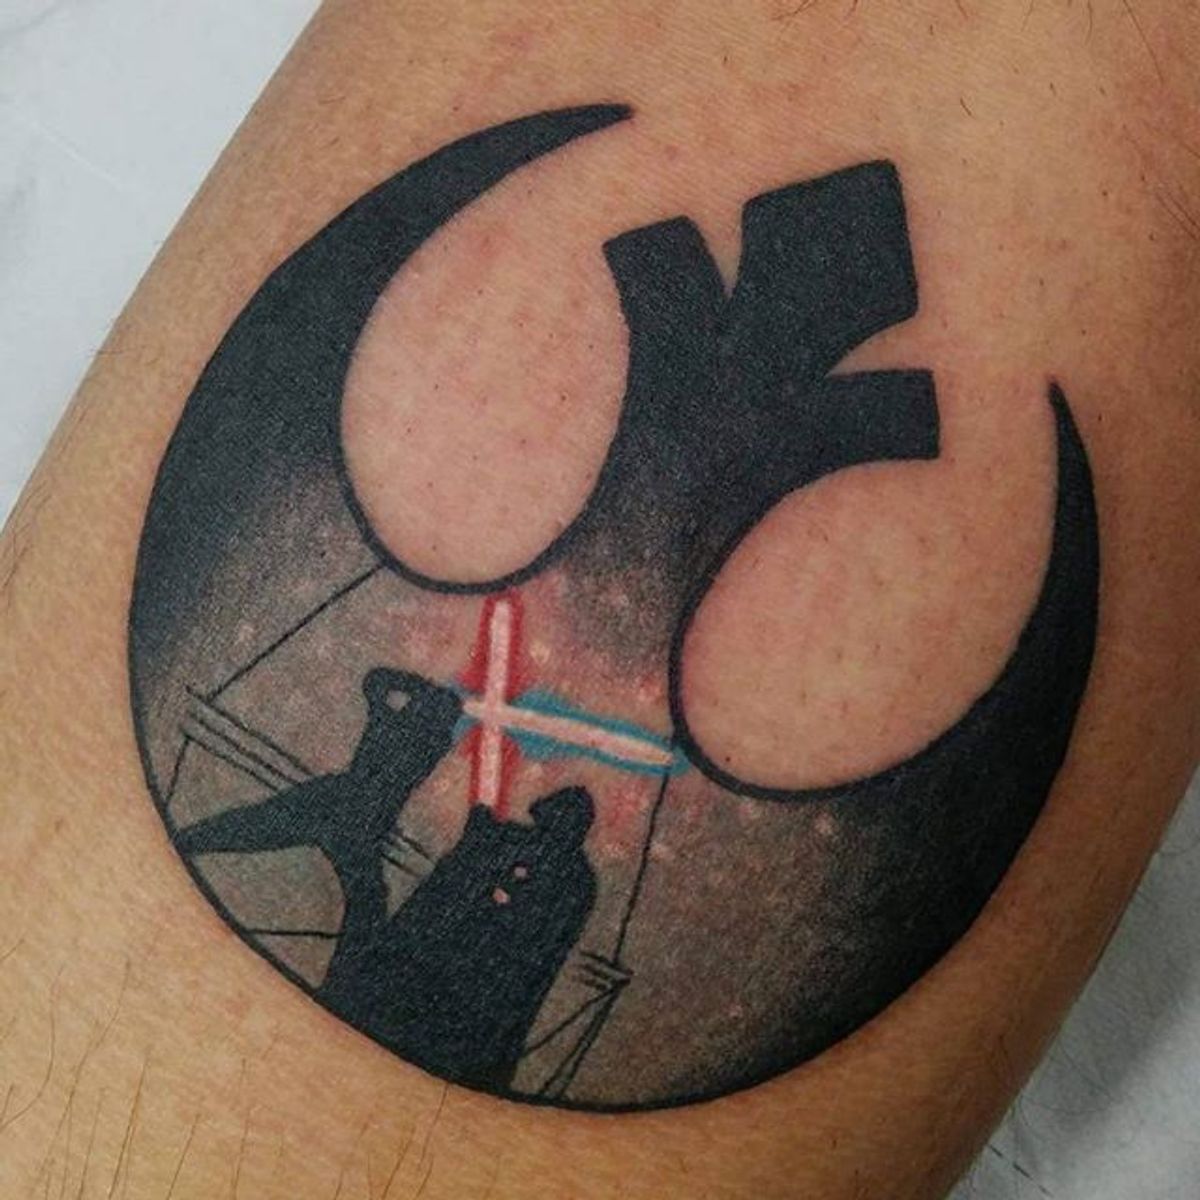 Tattoo uploaded by Robert Davies • Rebel Alliance Tattoo by Sunni Muffinson  #RebelAlliance #RebelAllianceTattoo #StarWarsTattoo #ForceAwakens #StarWars  #SunniMuffinson • Tattoodo